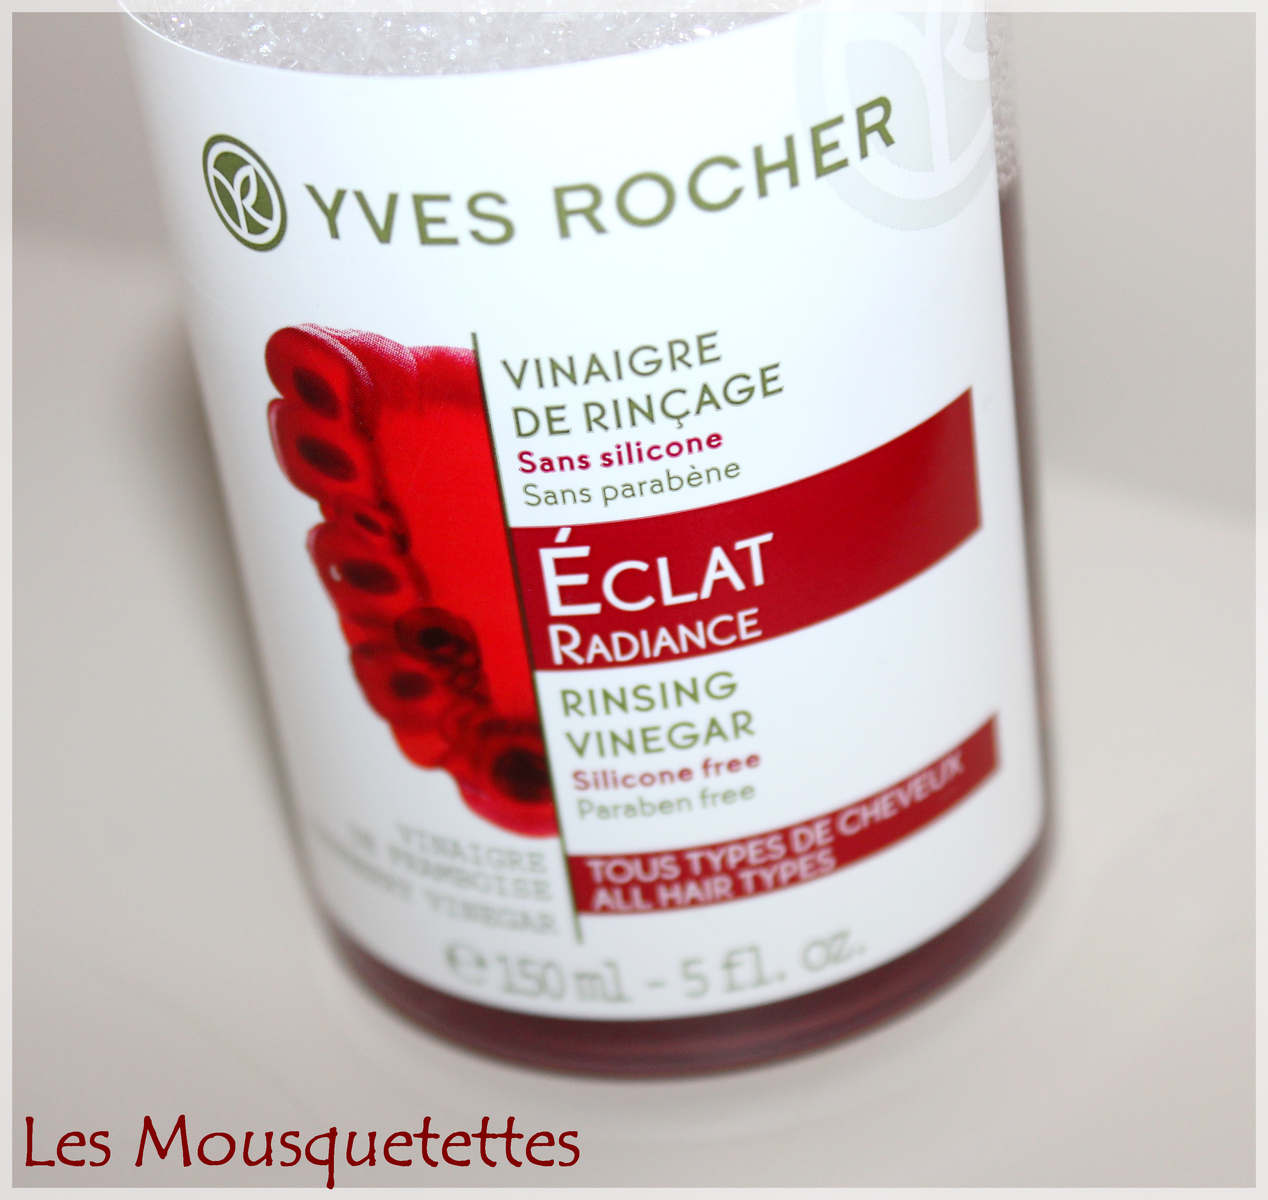 Vinaigre de rinçage Yves Rocher - Les Mousquetettes©